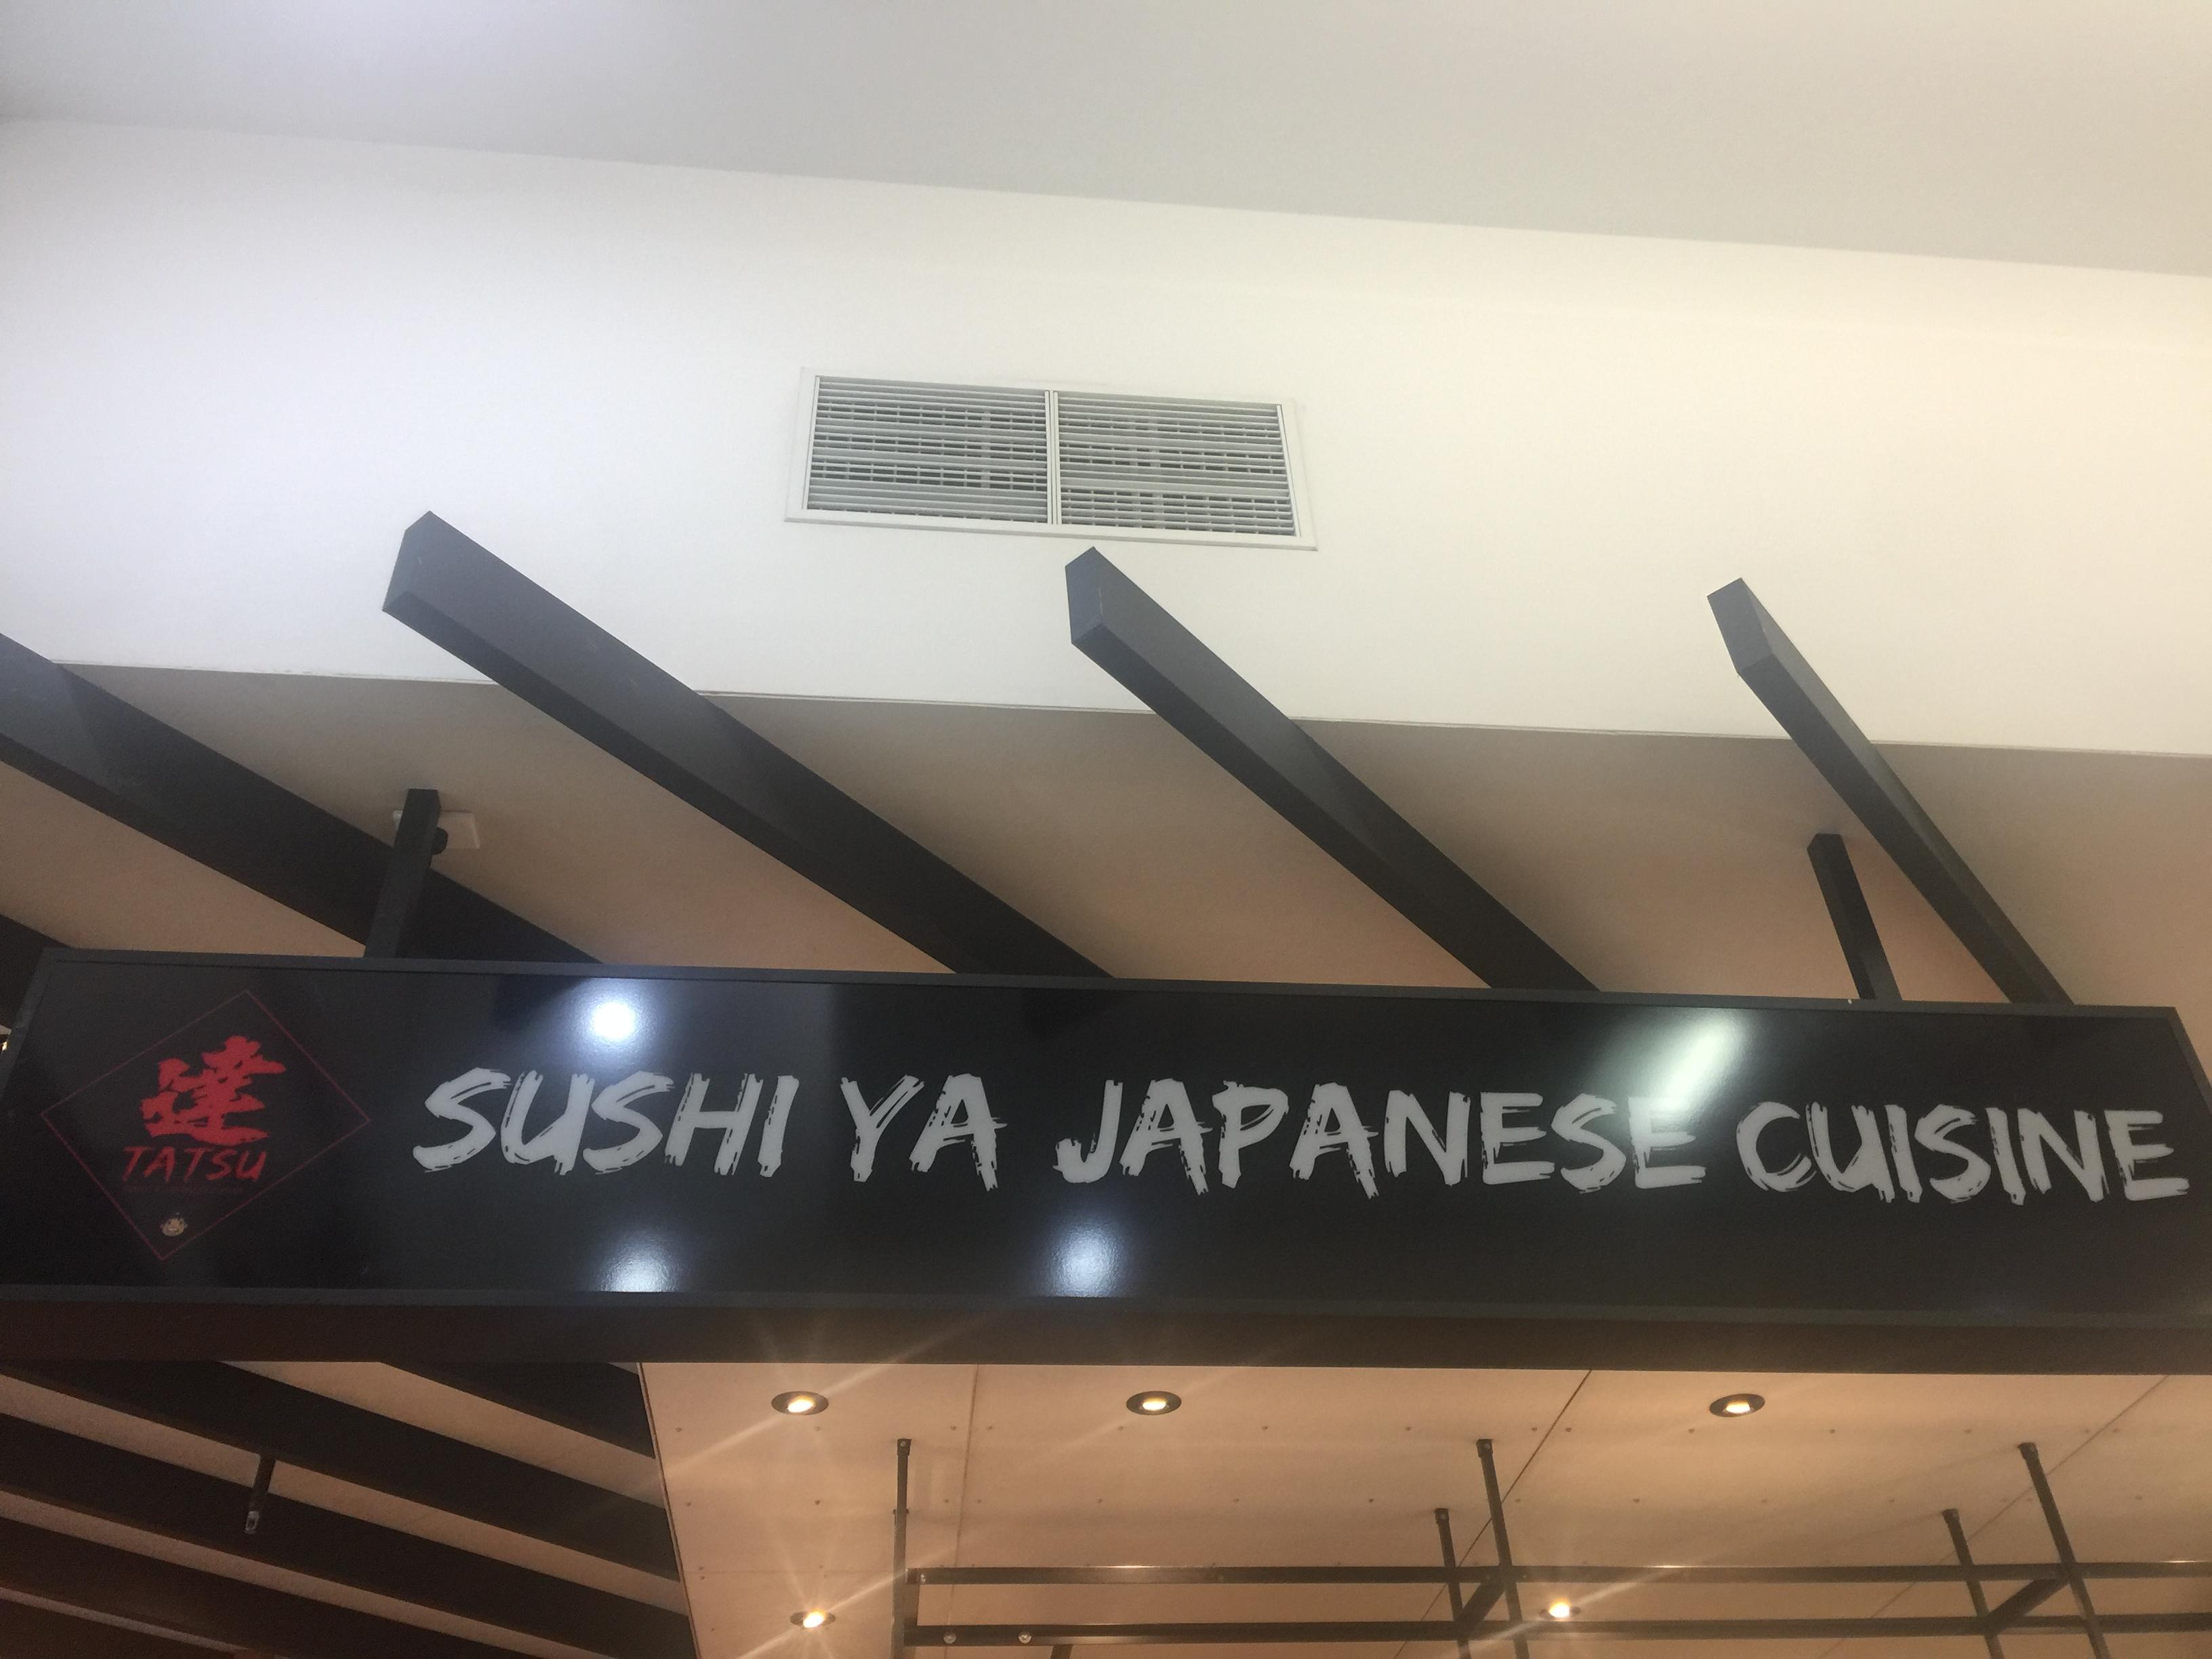 Sushi Ya Japanese Cuisine